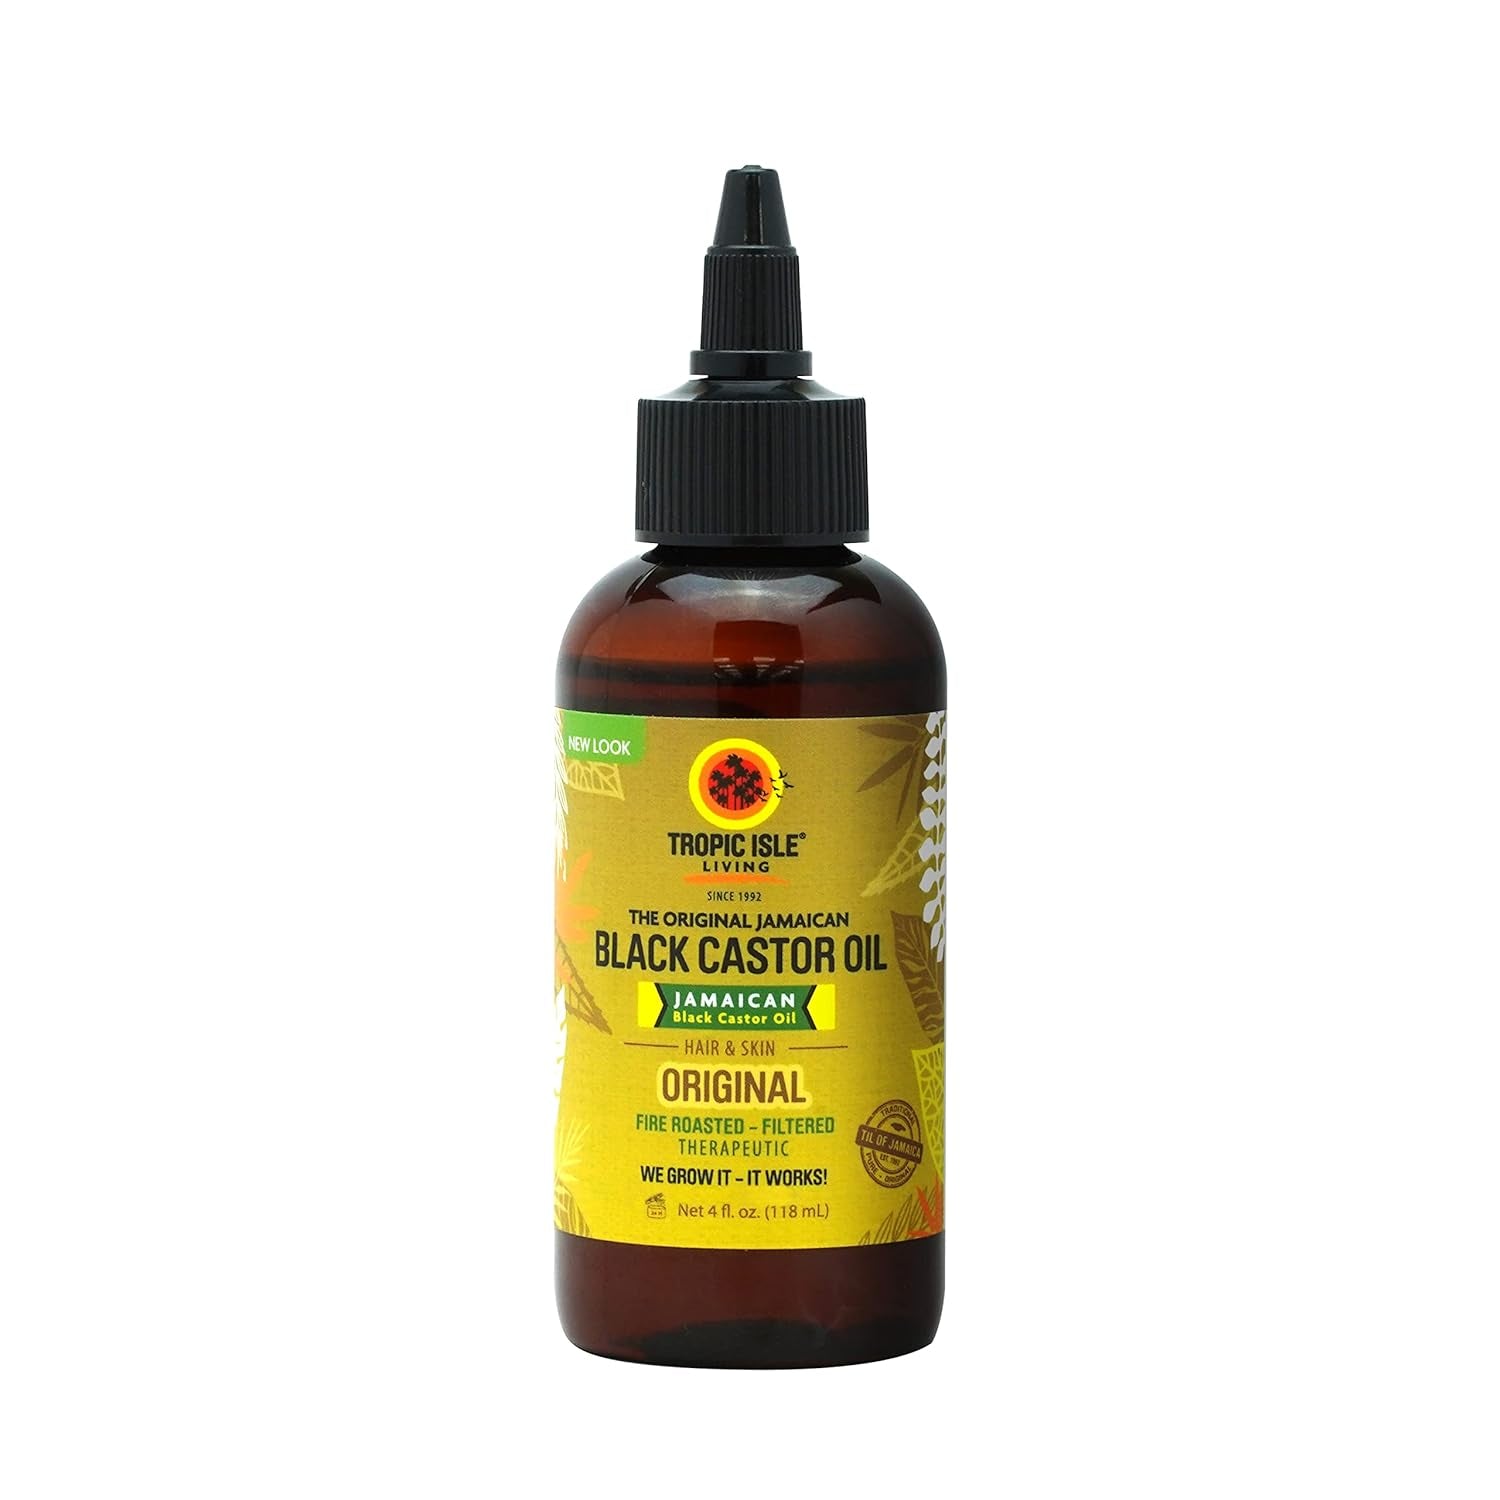 Tropic Isle Living Jamaican Black Castor Oil Glass Bottle (4 Oz)